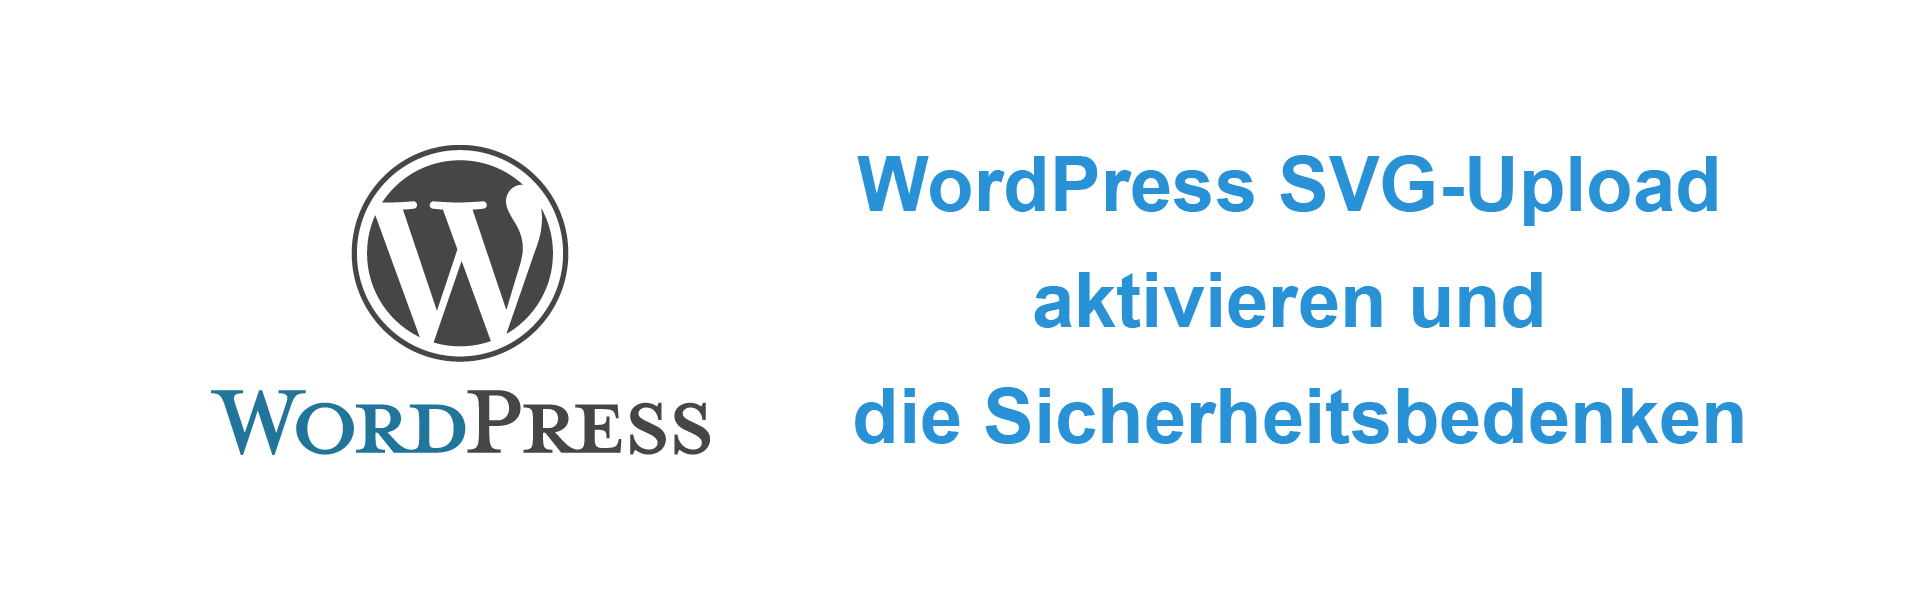 Download WordPress SVG Upload aktivieren & Sicherheitsbedenken 2020